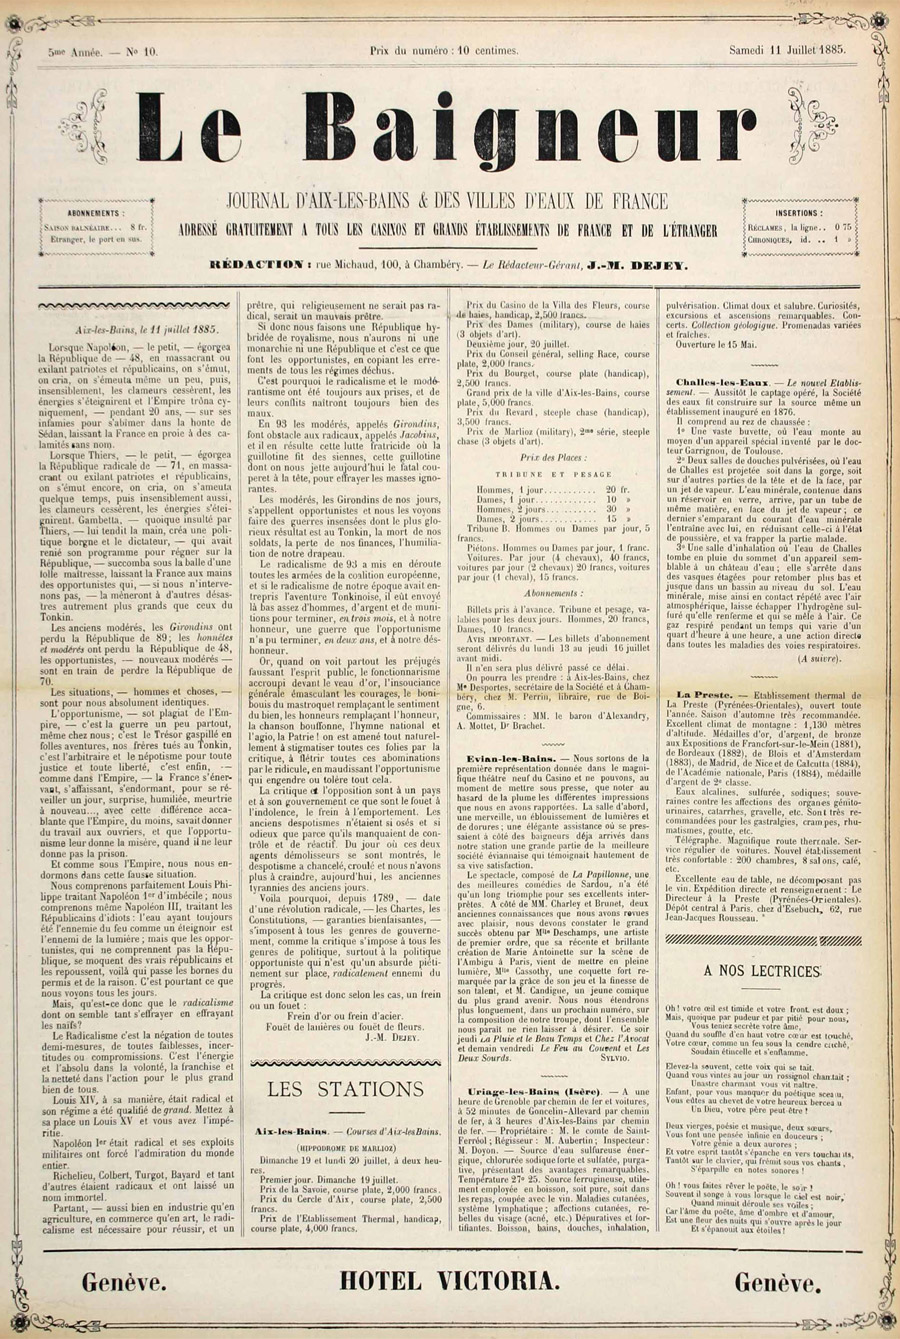 Le Baigneur, 11 juillet 1885